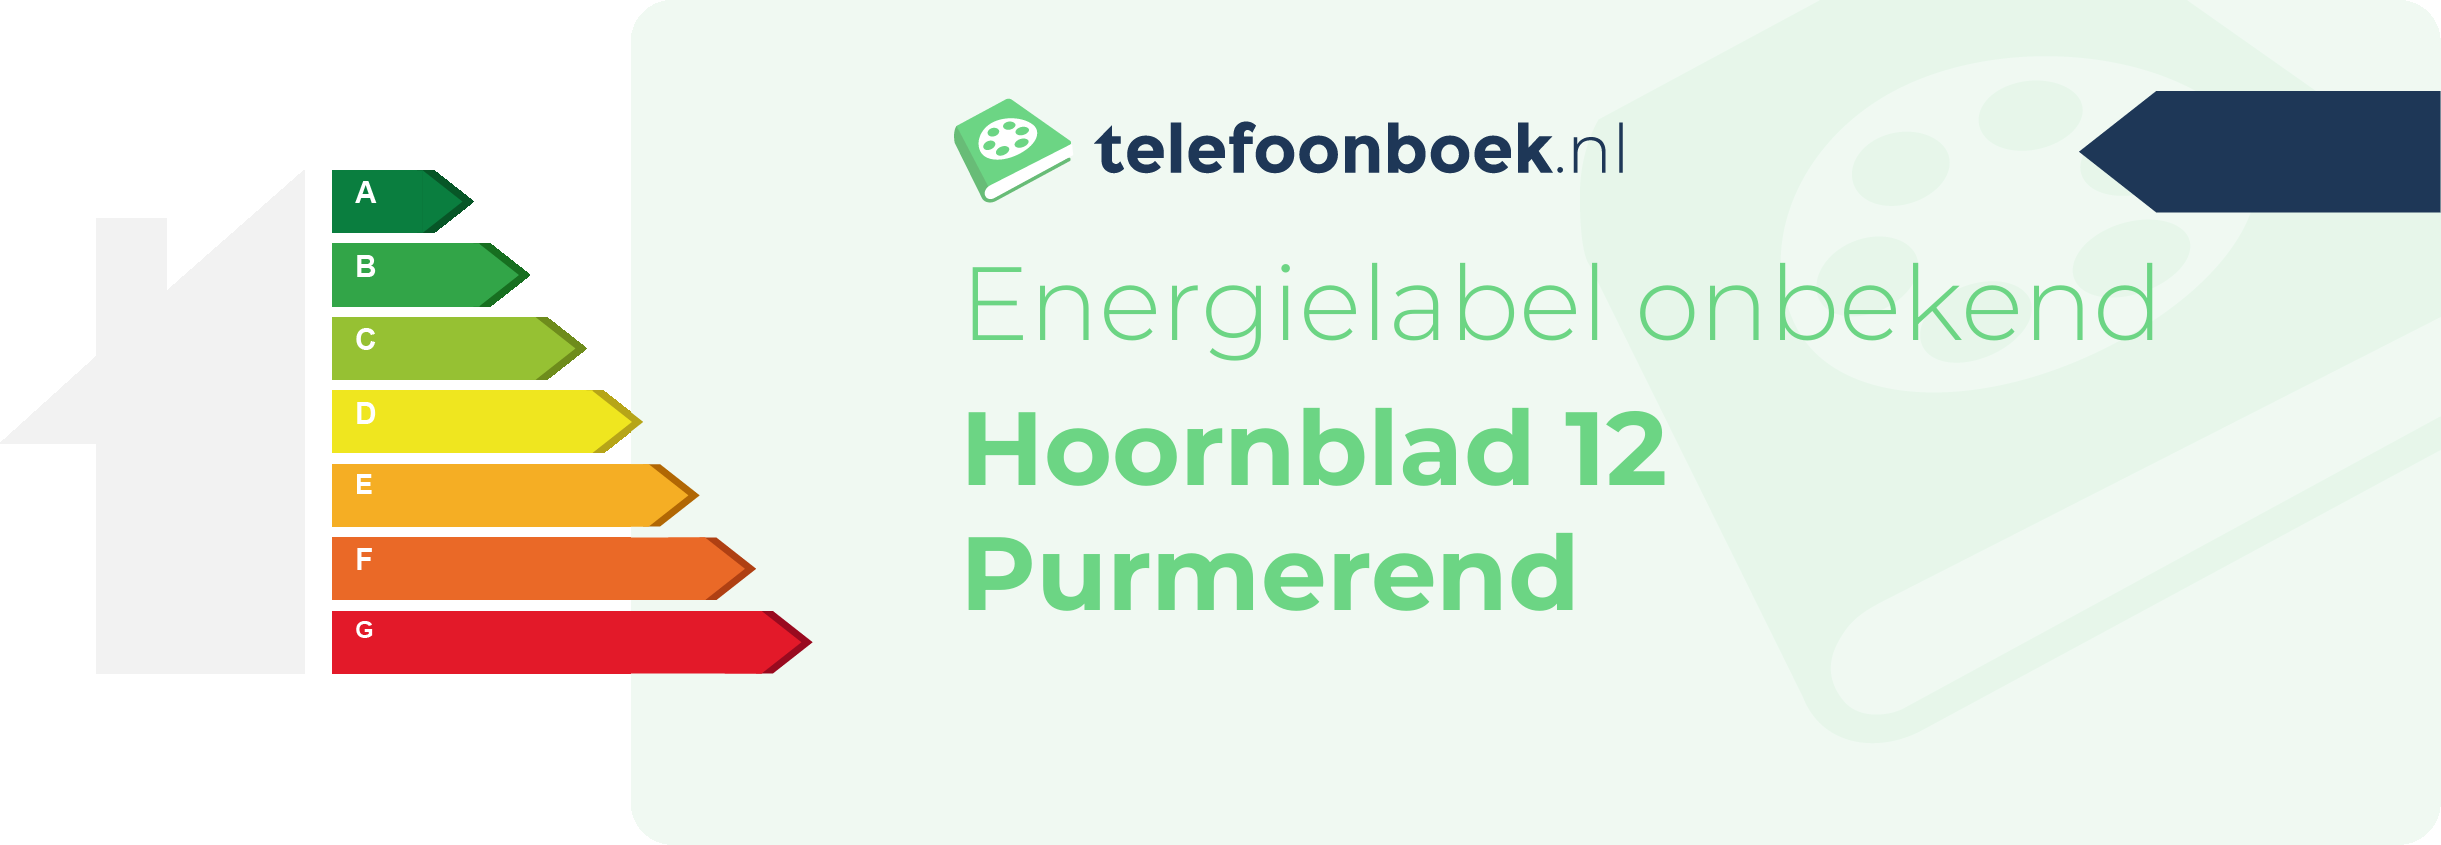 Energielabel Hoornblad 12 Purmerend